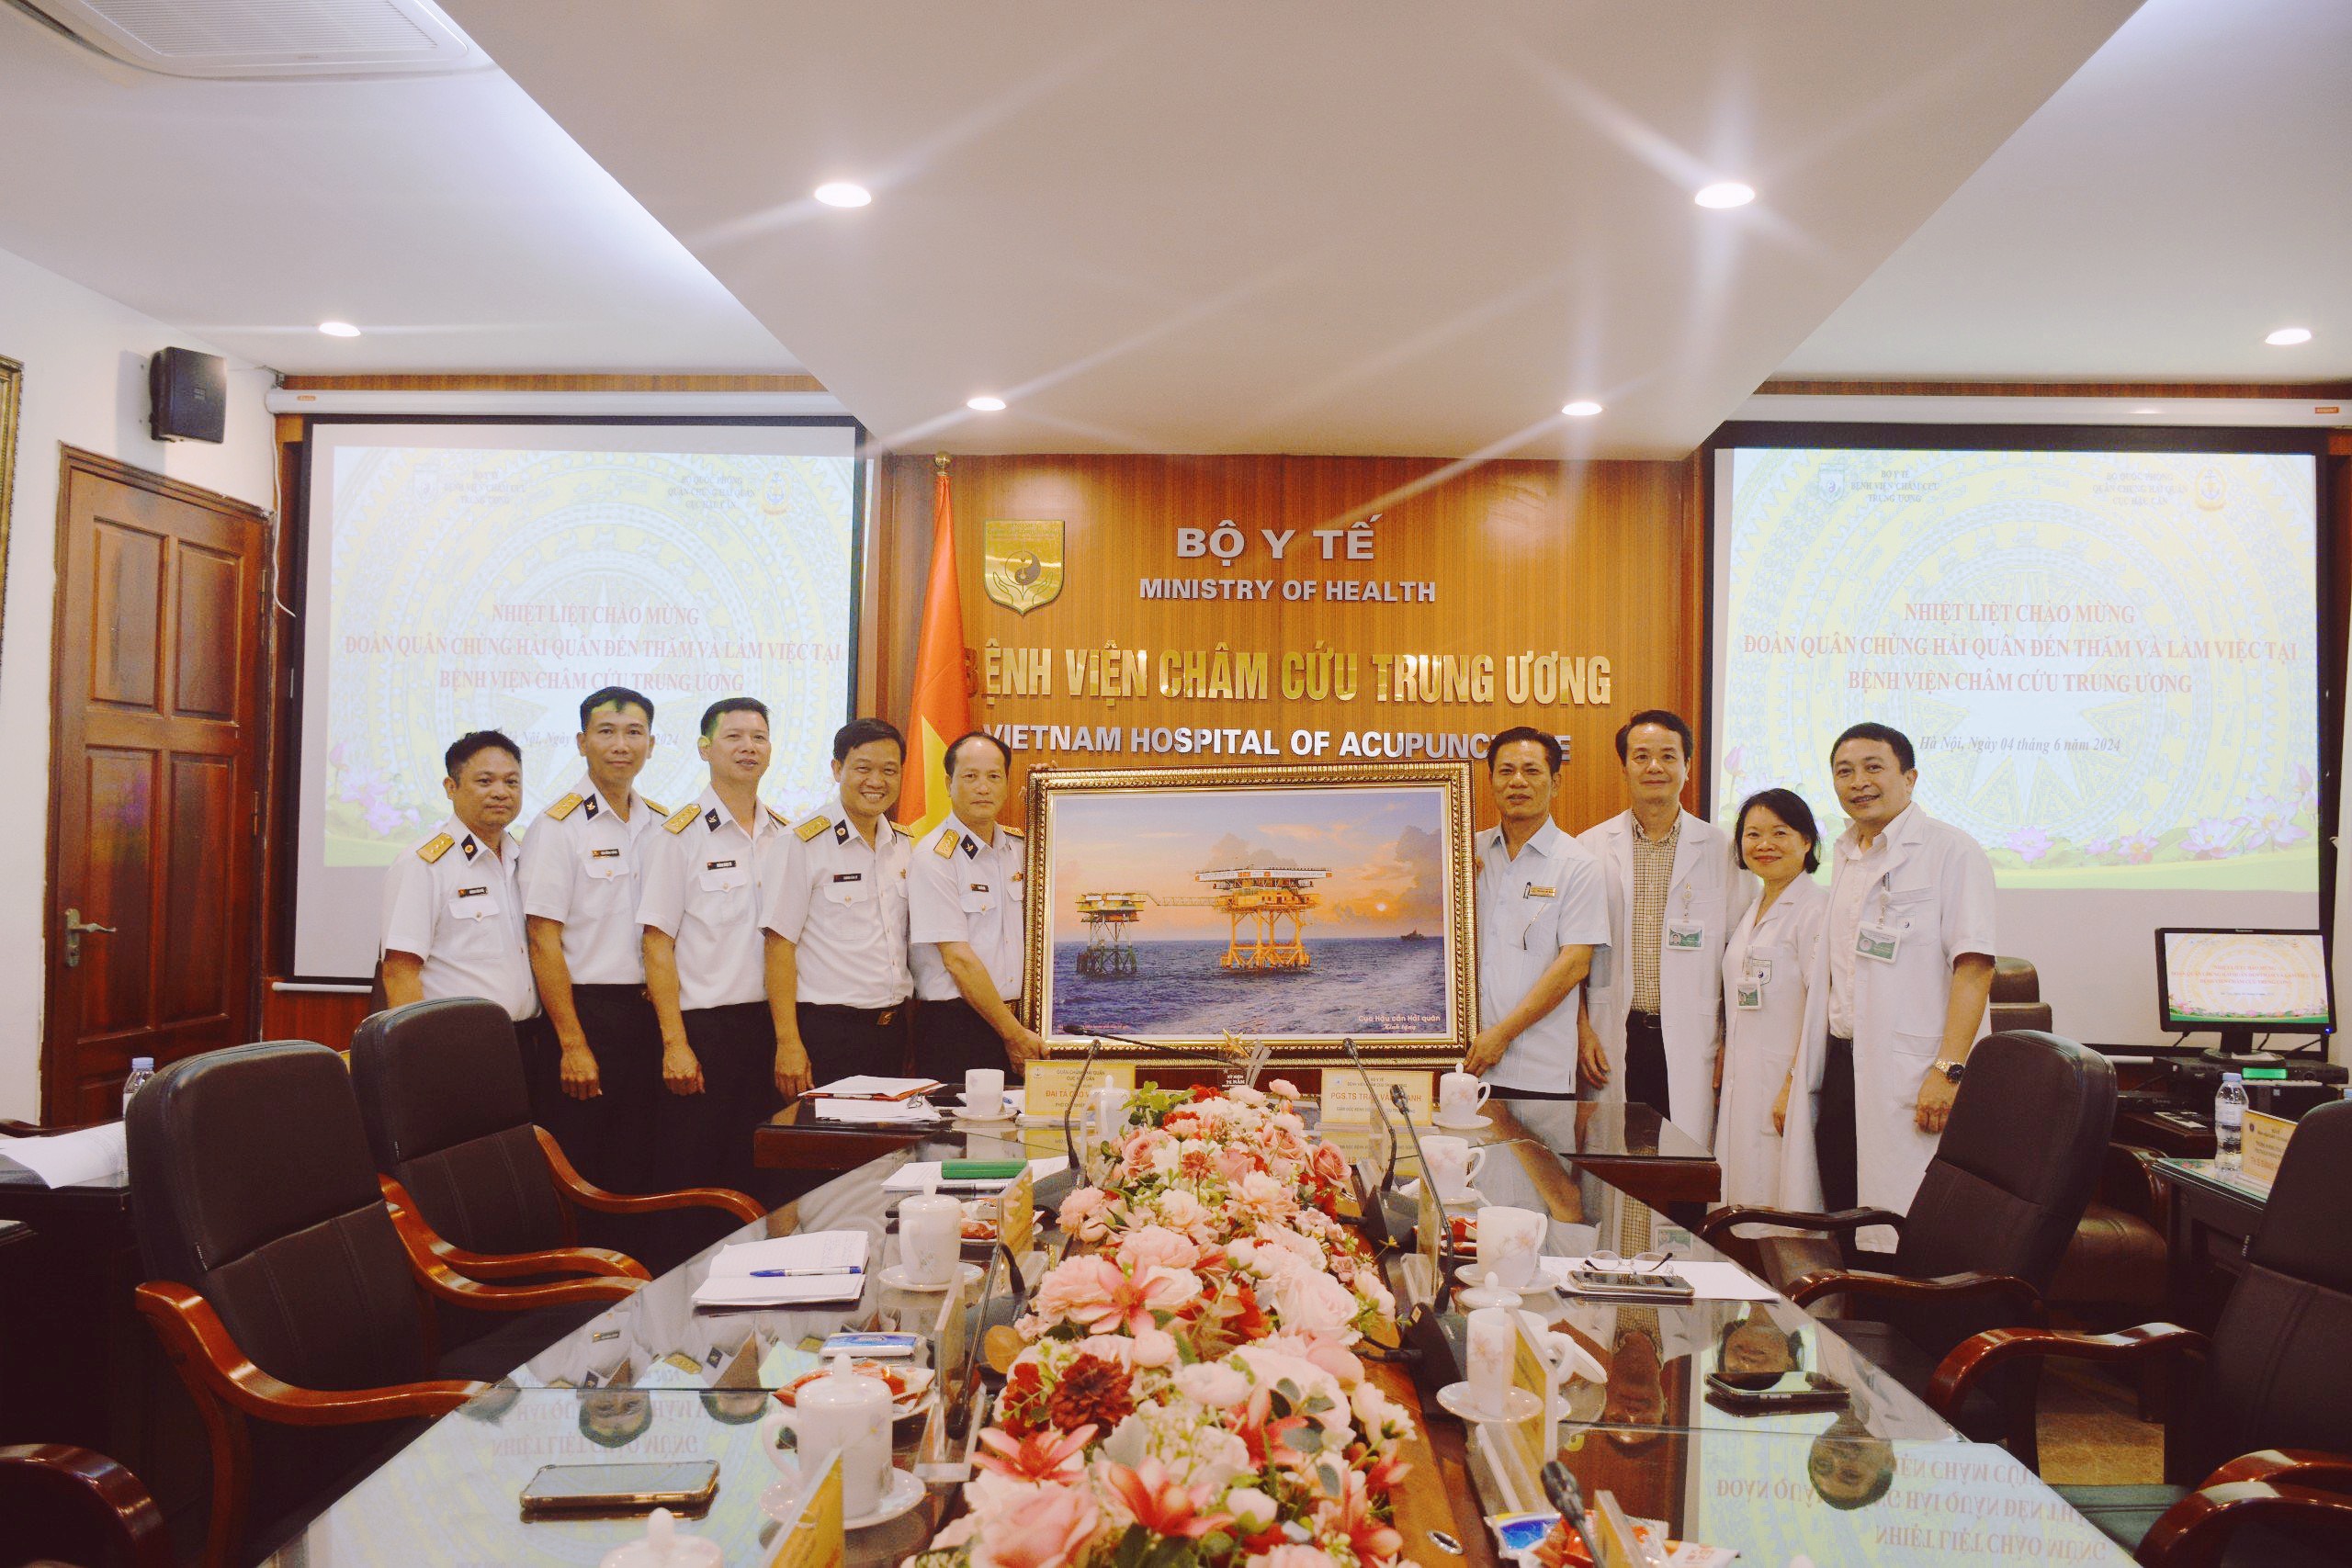 Bệnh viện Châm cứu Trung ương thỏa thuận hợp tác hỗ trợ y tế Quân chủng Hải quân